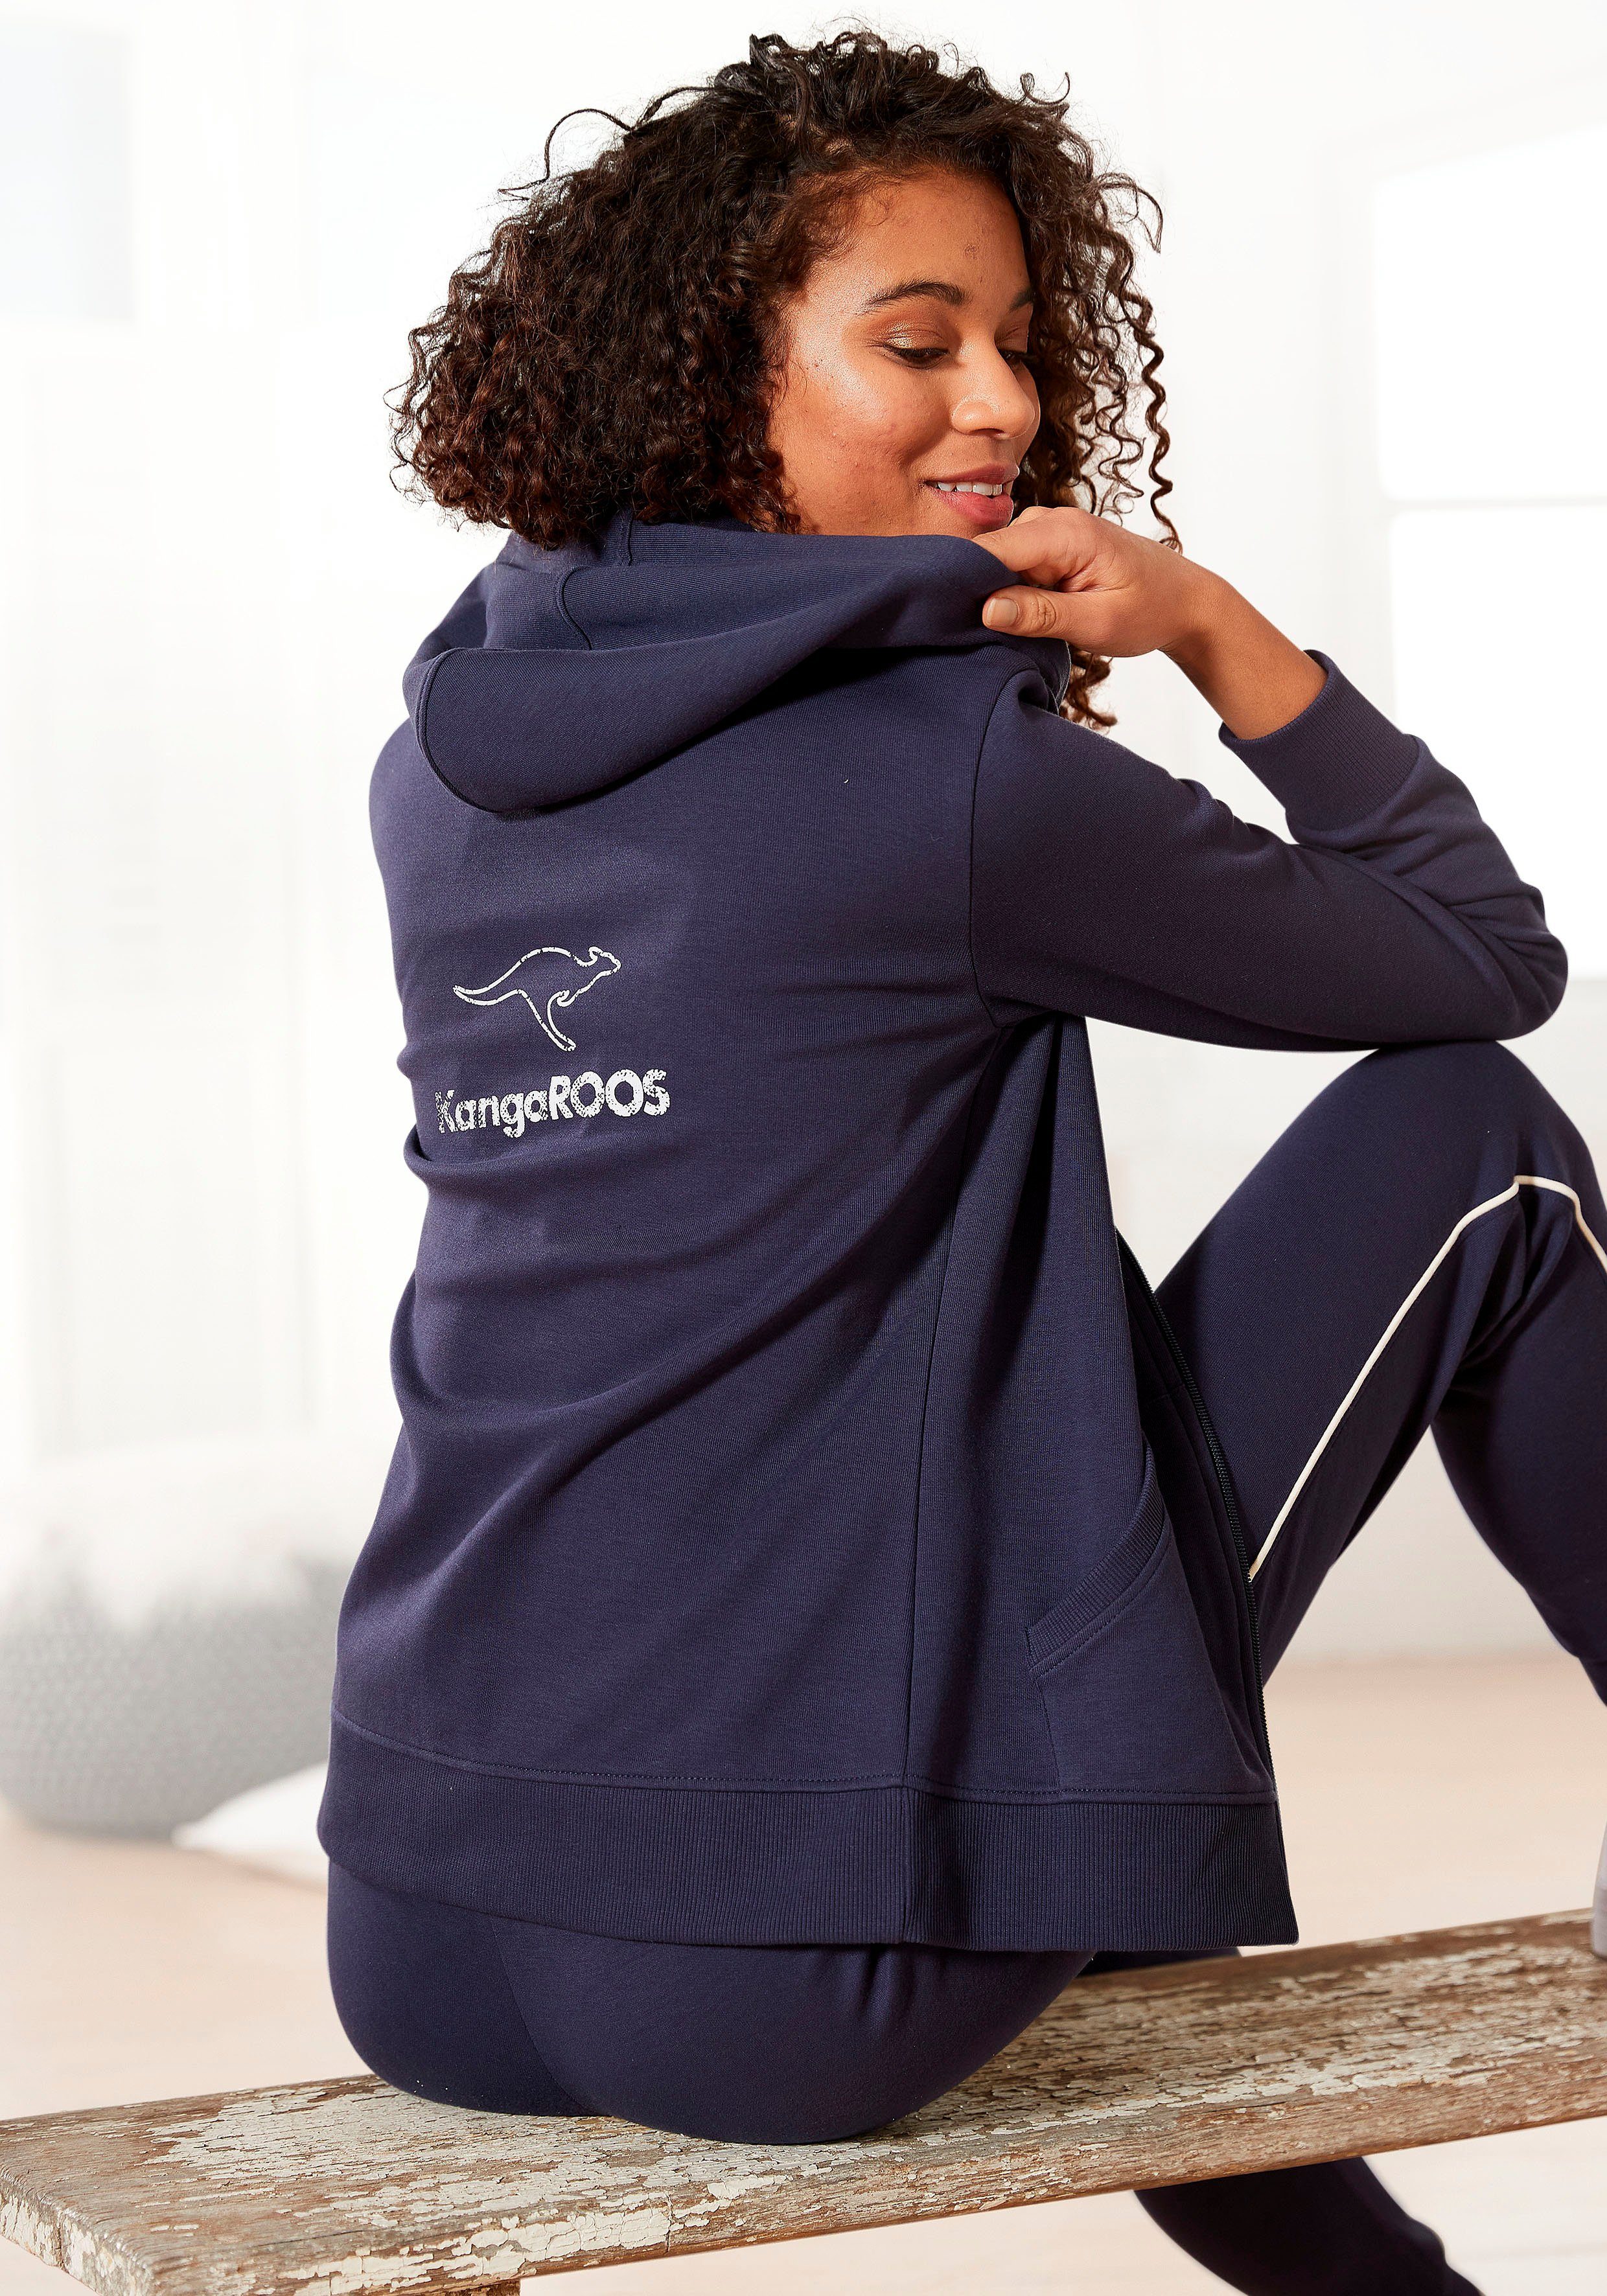 KangaROOS Sweatjacke mit großem Logodruck auf dem Rücken